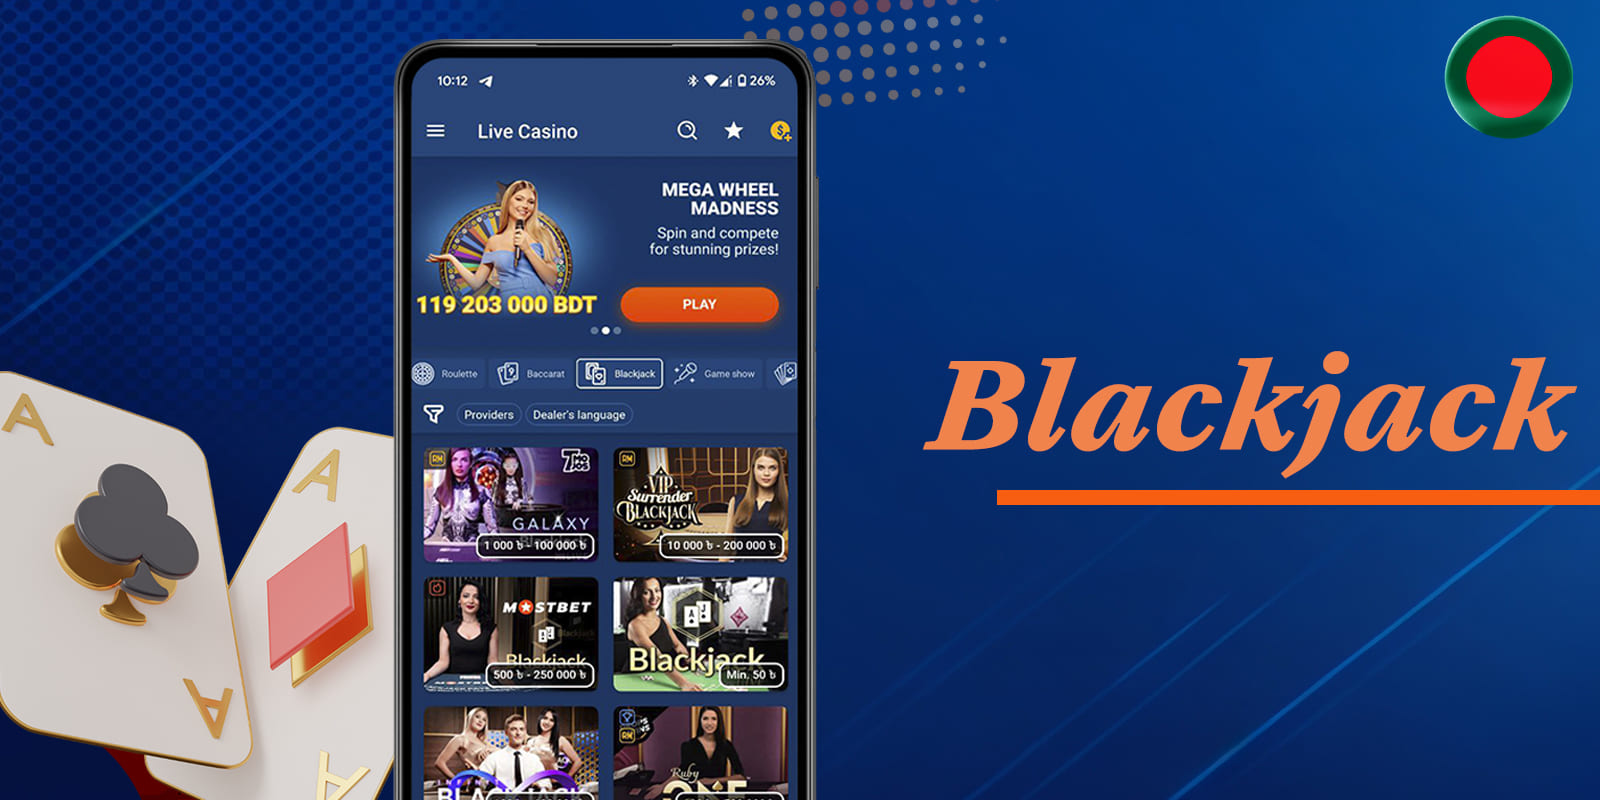 Live Blackjack on the Mostbet platform